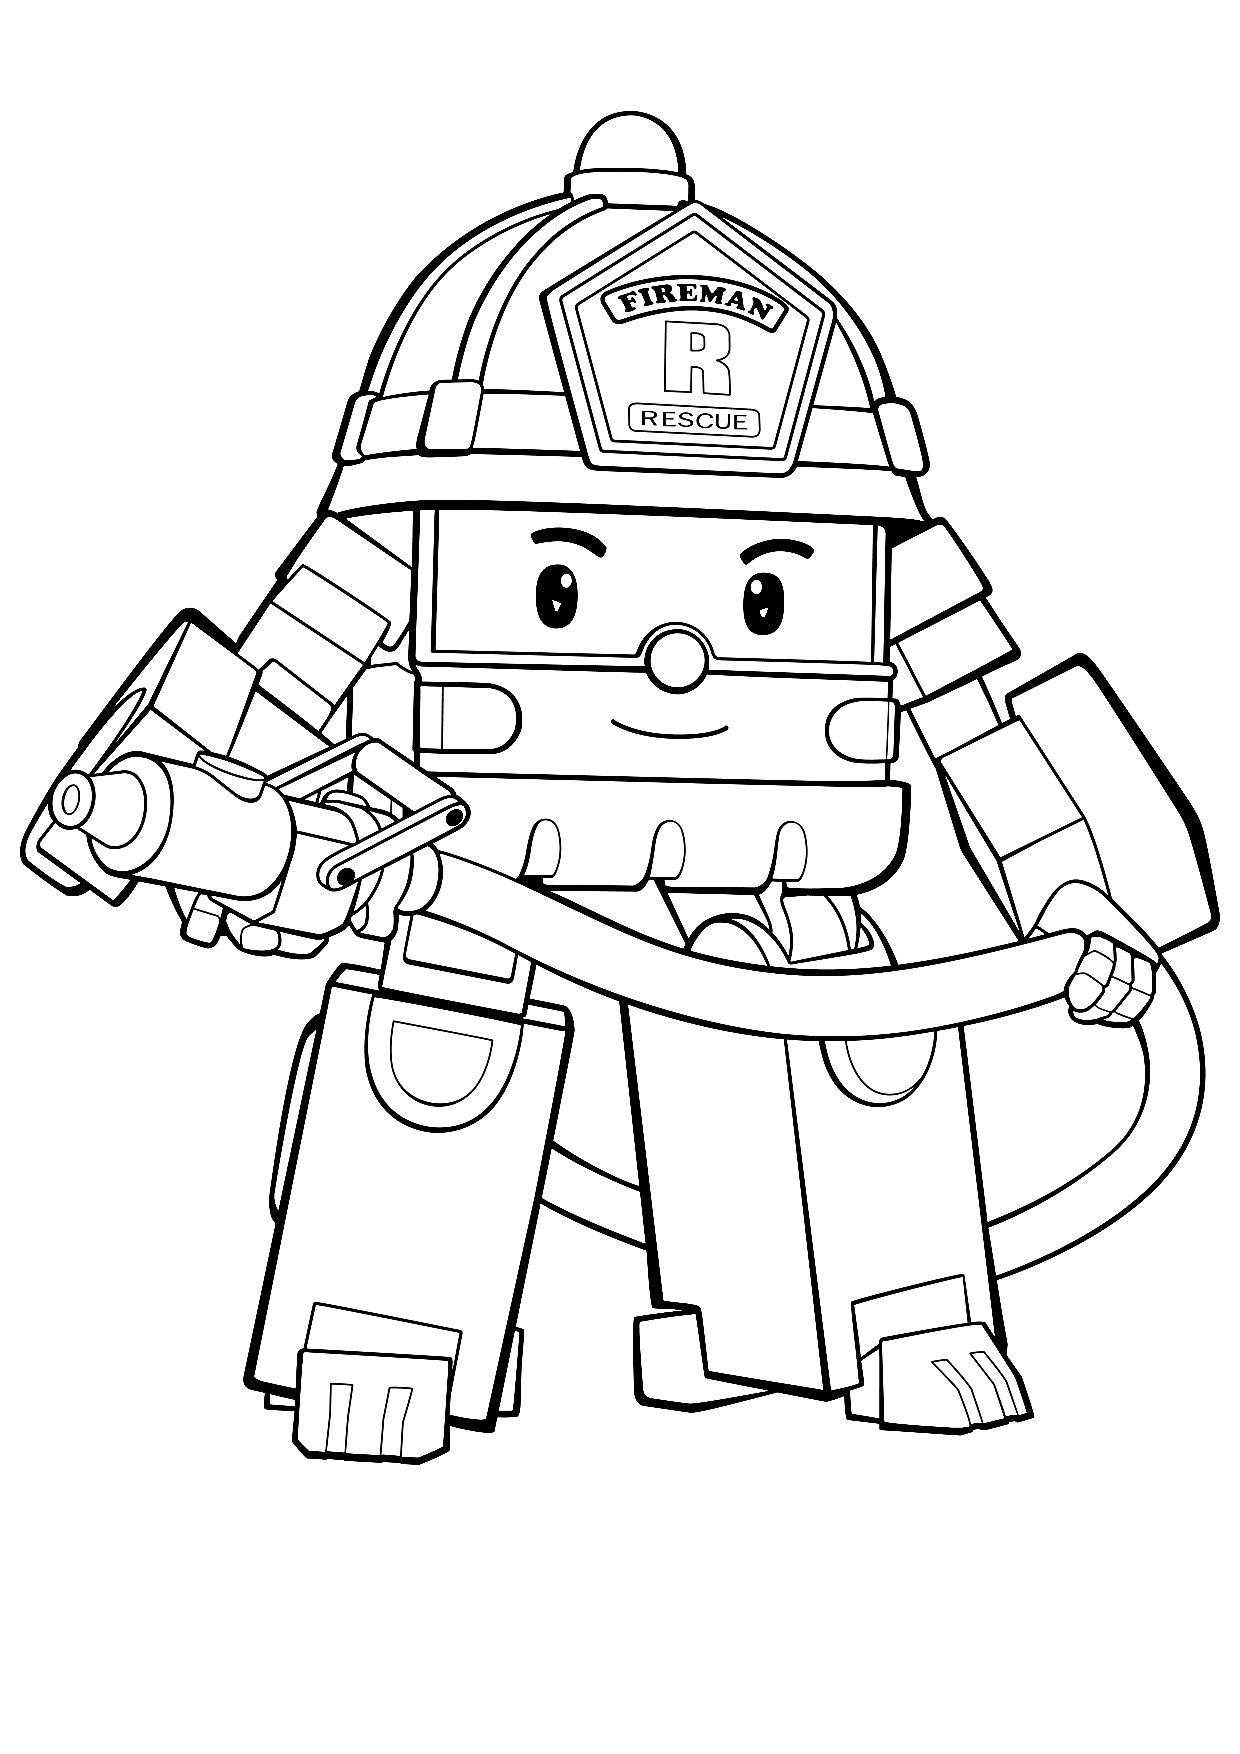 Поли Робокар пожарный с пожарным шлангом и каской